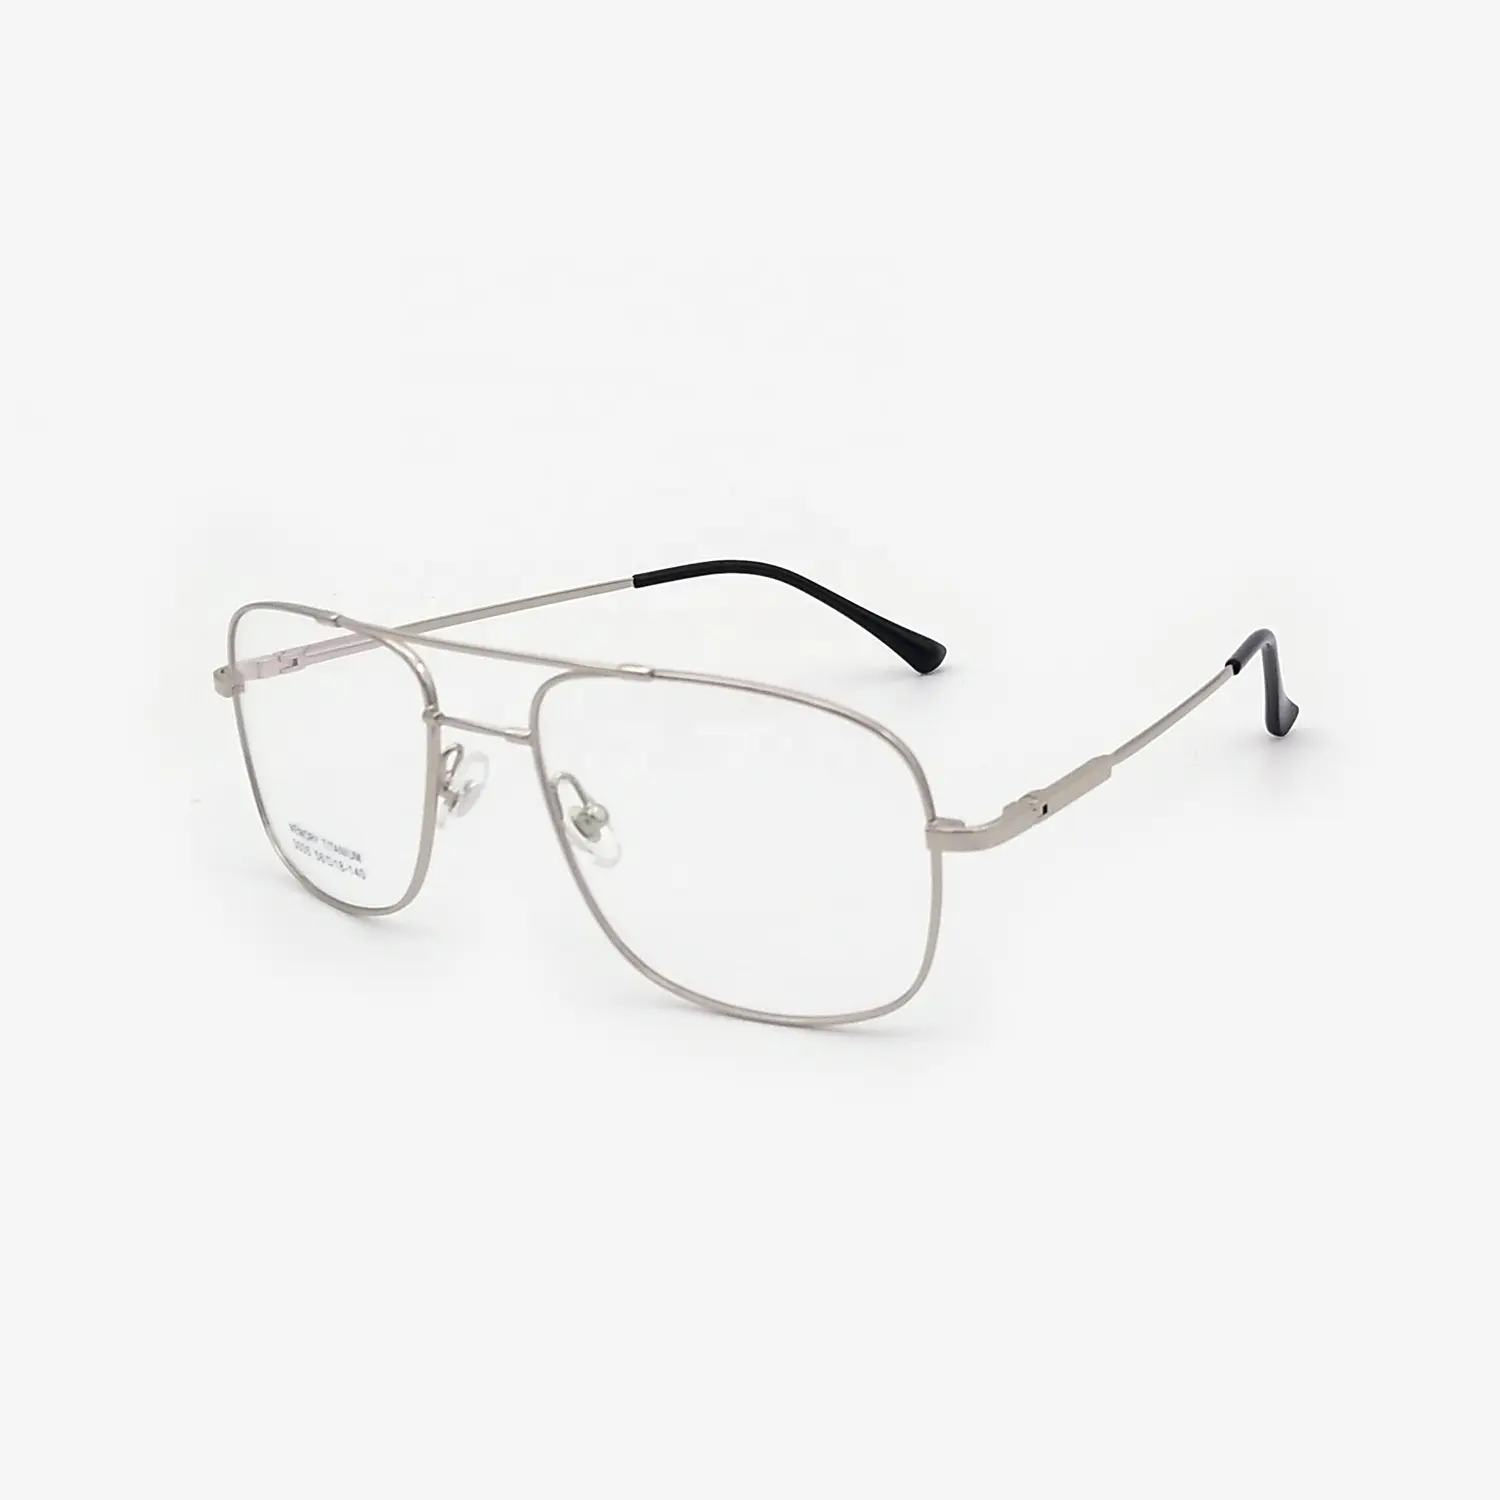 Übergröße Speicher Titanium Viereckige Männer Rezept-Brille flexible optische Brille Brillen Rahmen Retro-Computer-Brille